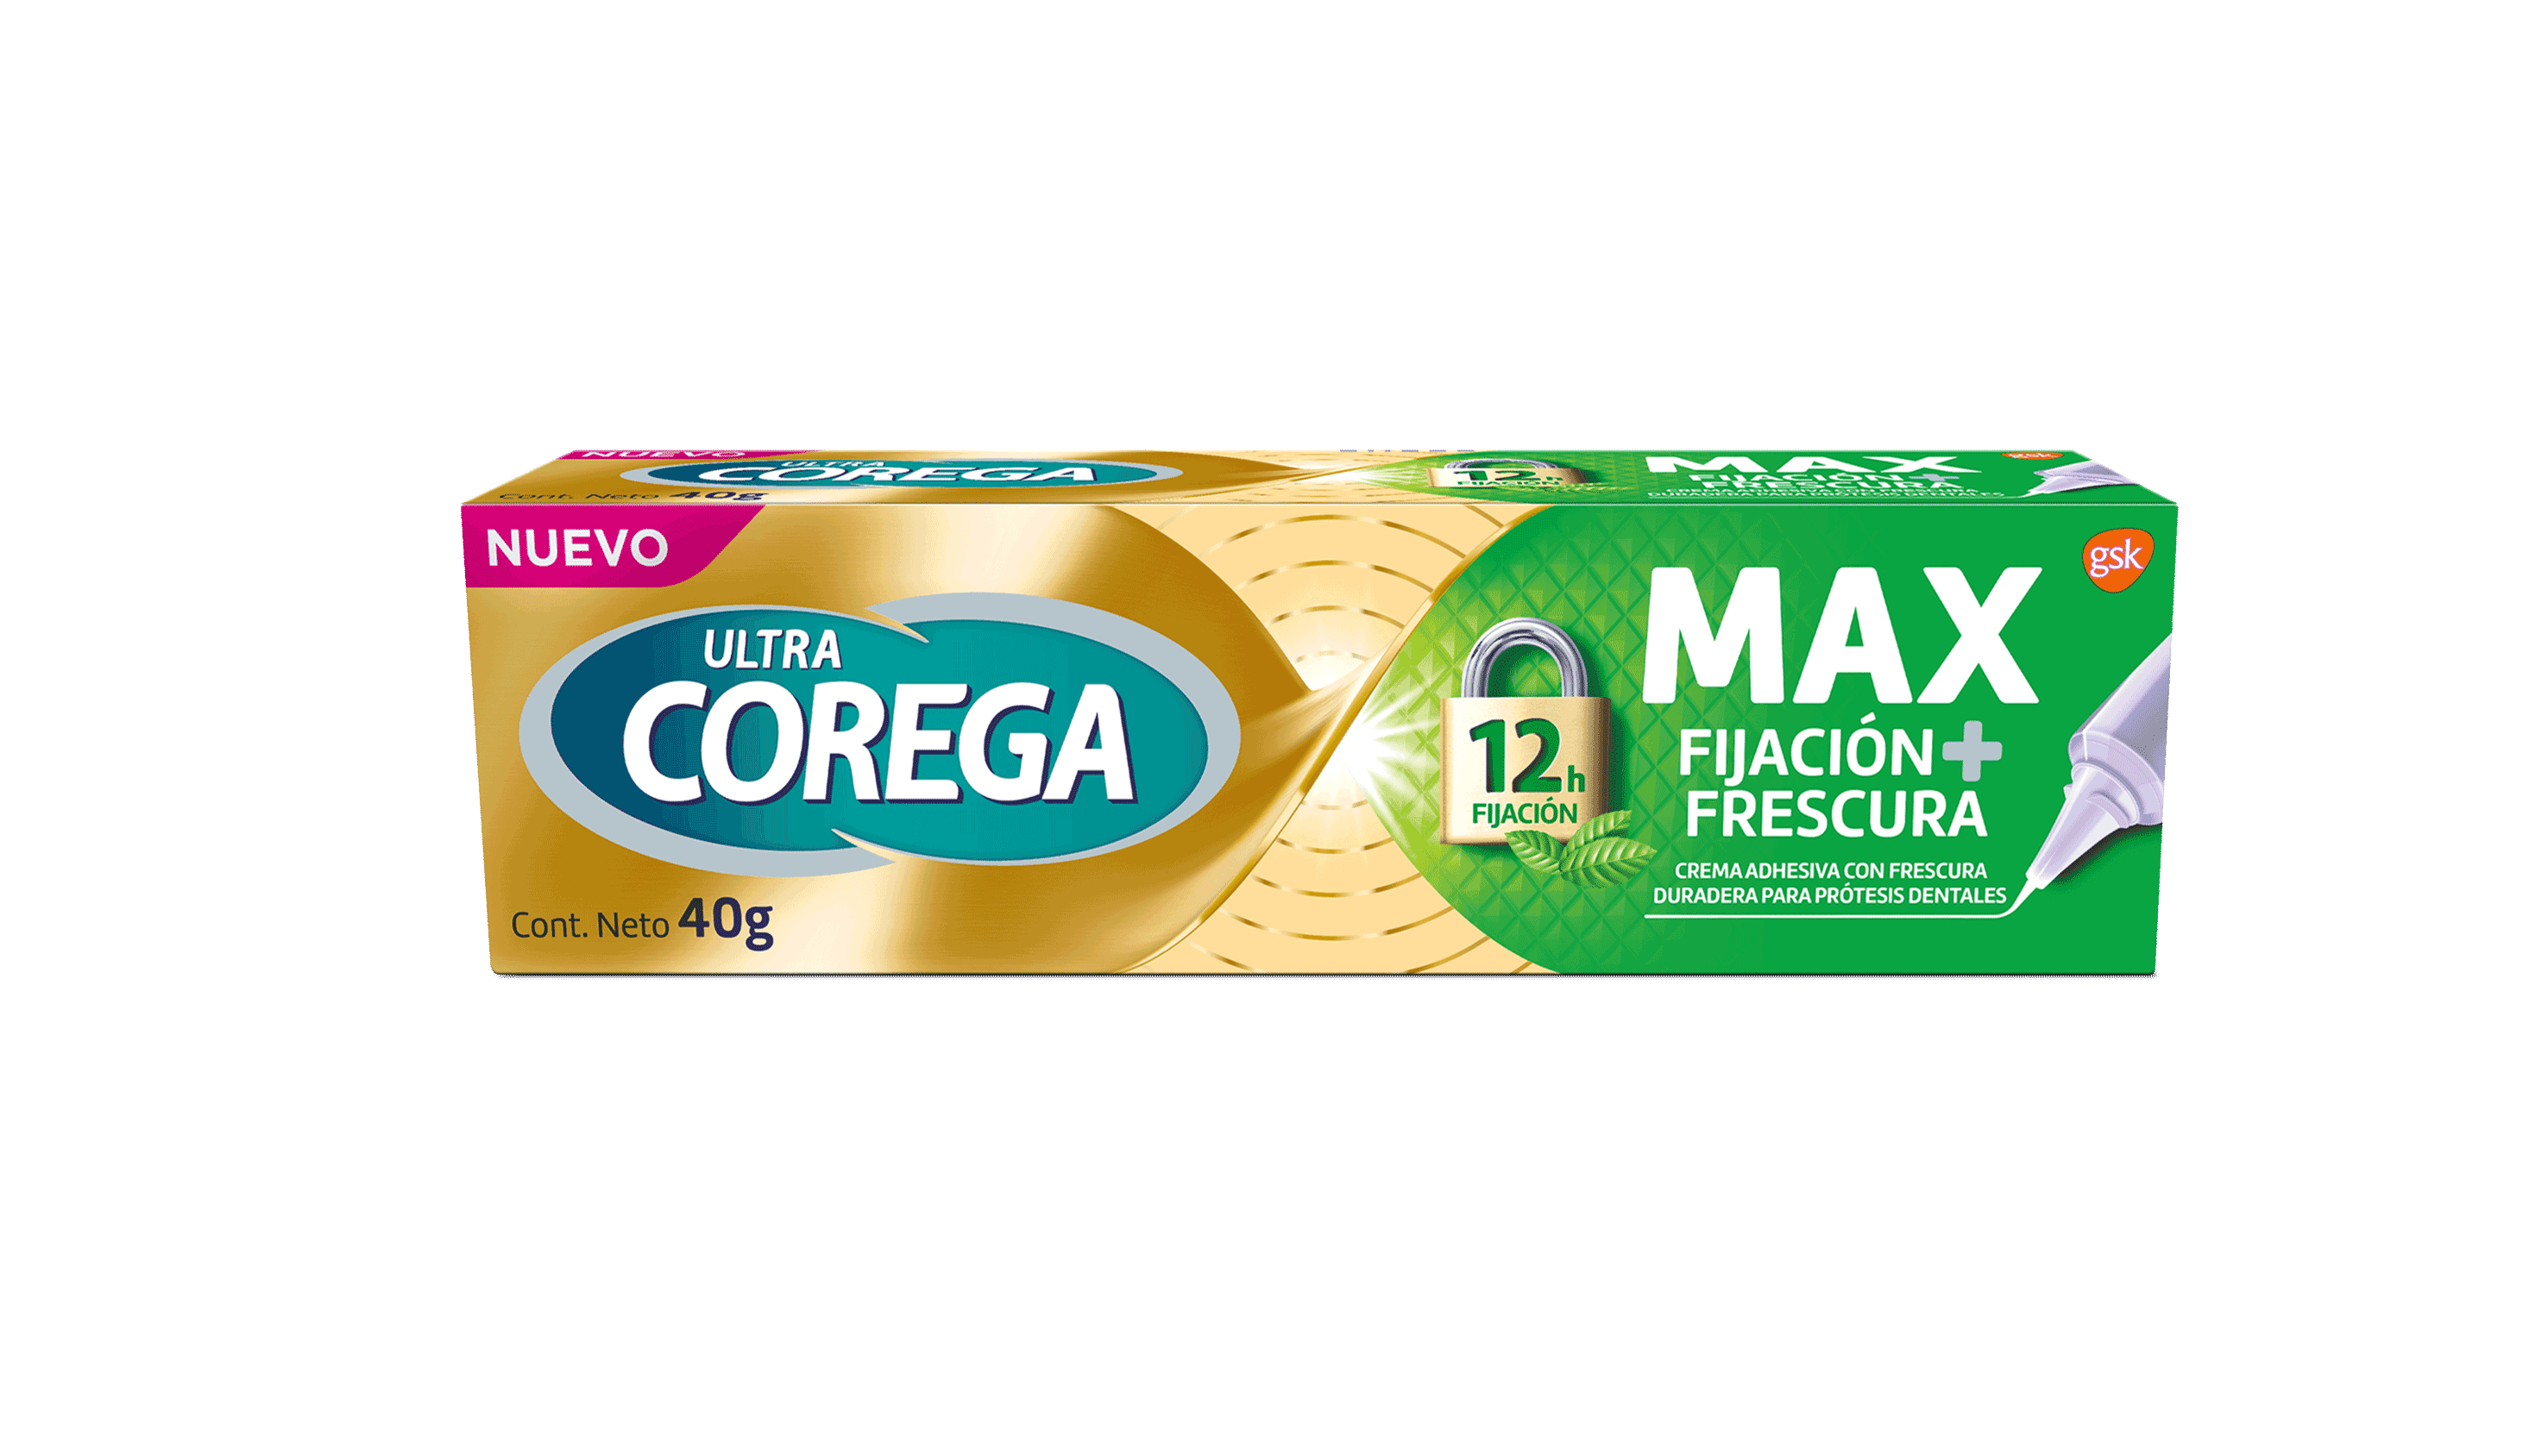 Ultra Corega Max Fijación + Frescura